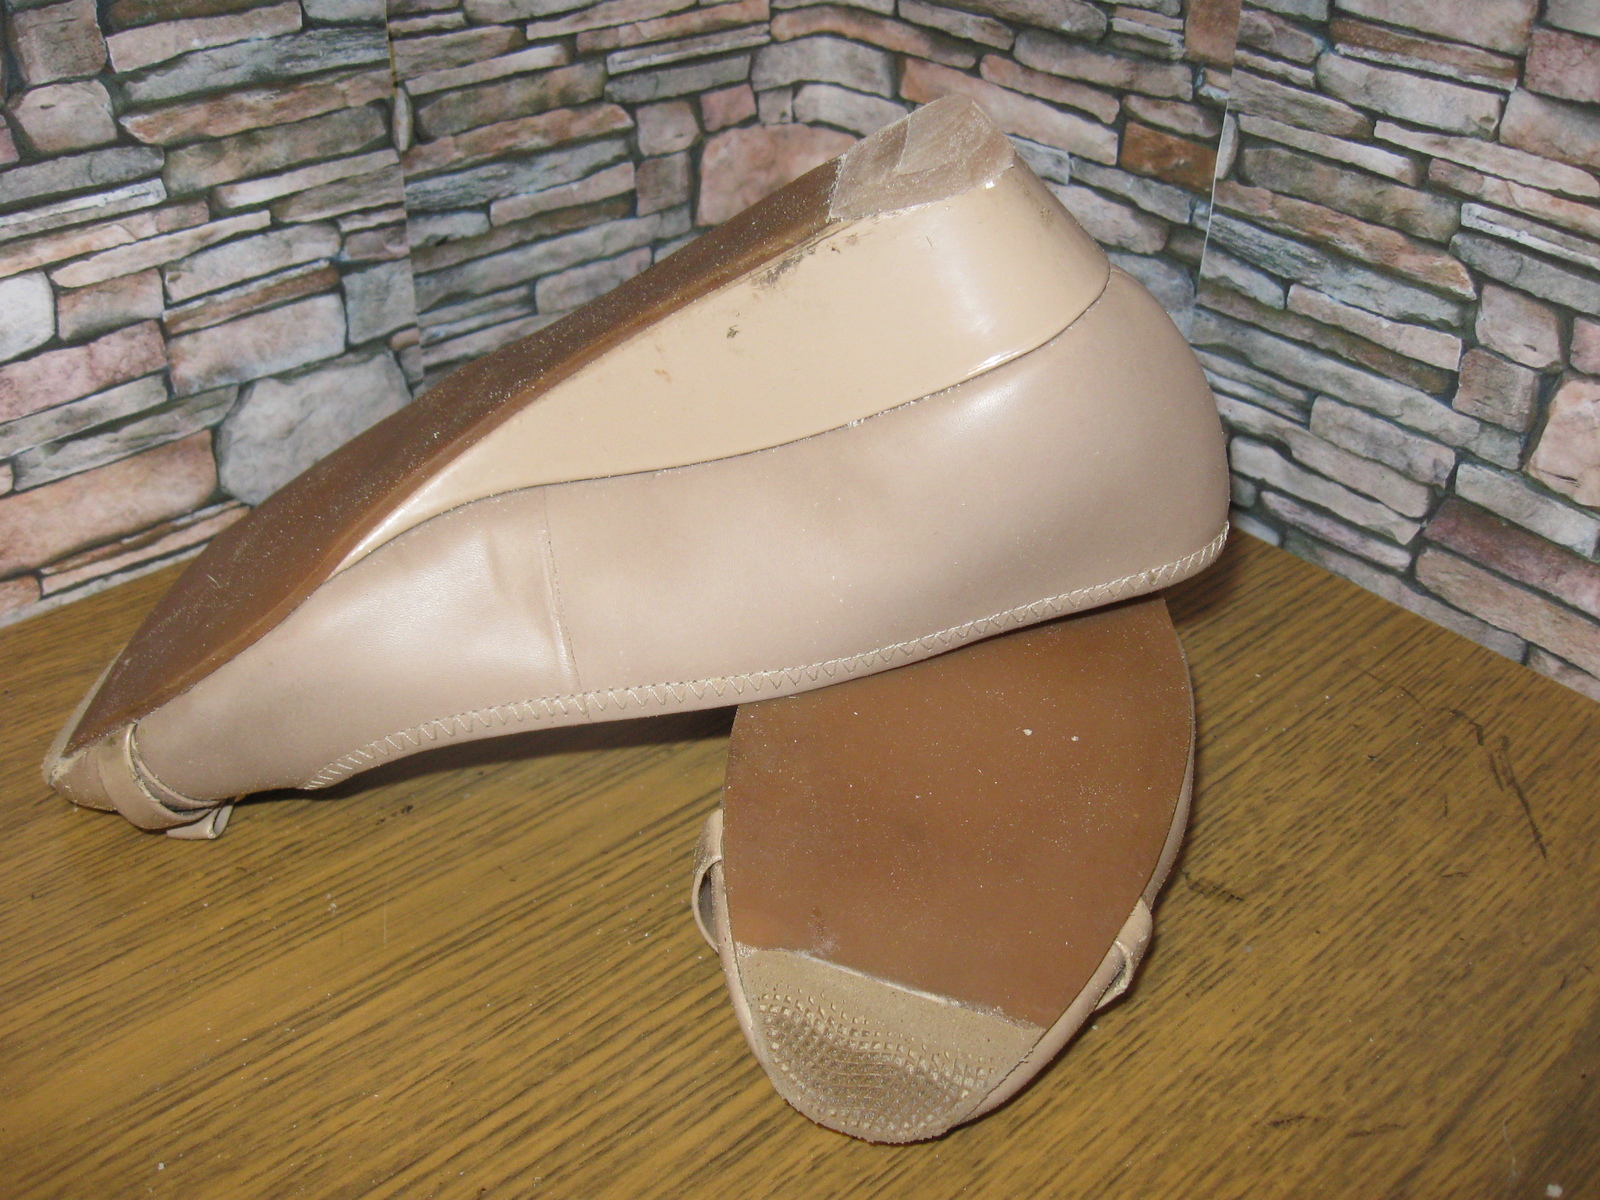 Insidious wedge style. - My, Shoe repair, Heels, Wedge heel, Work, Longpost